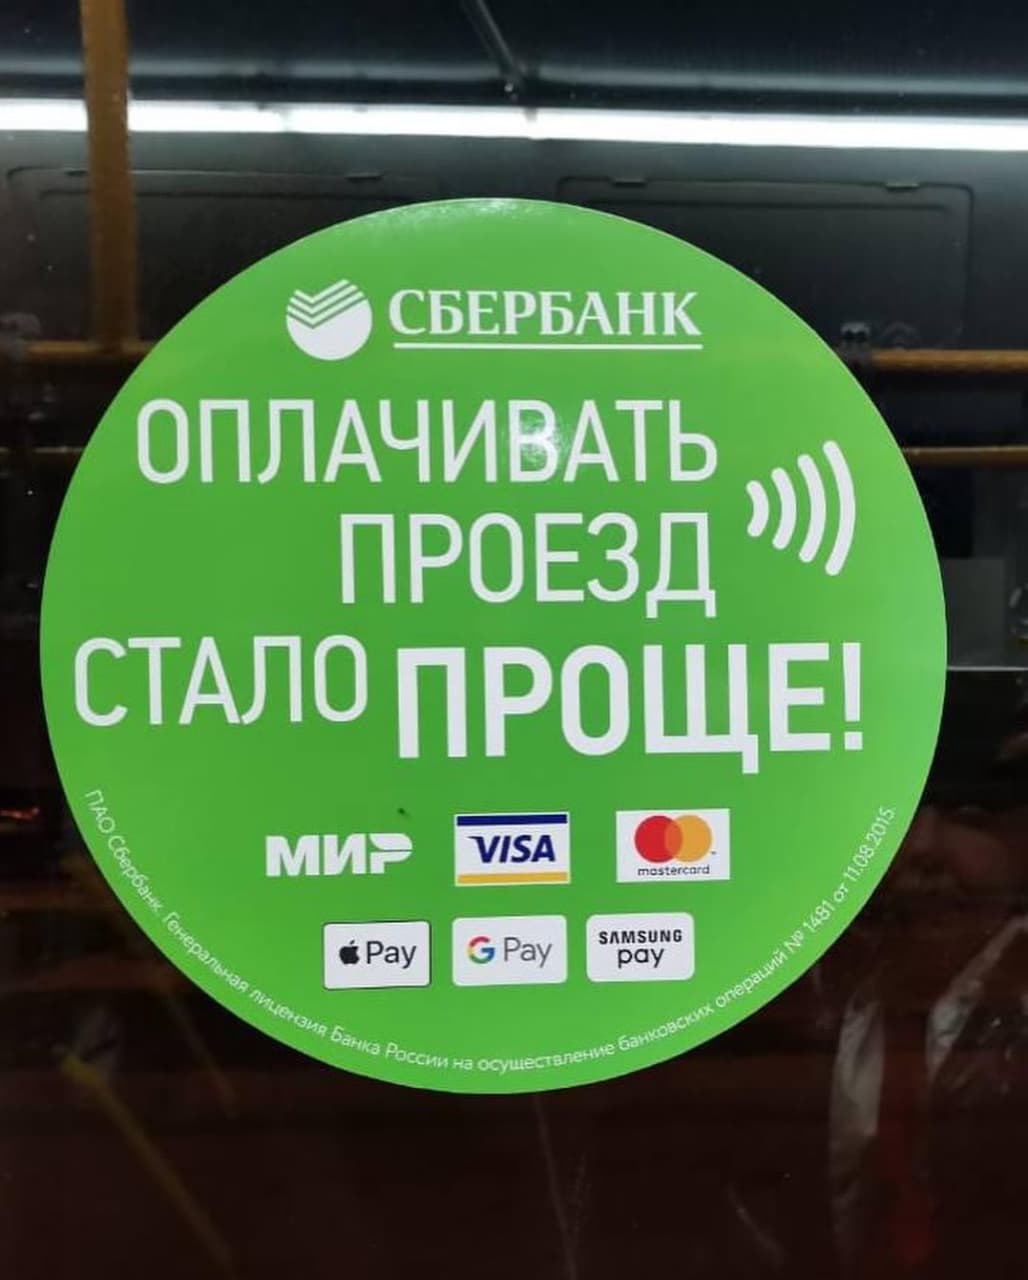  Муниципальный транспорт Нальчика снижает тарифы при оплате банковскими картами